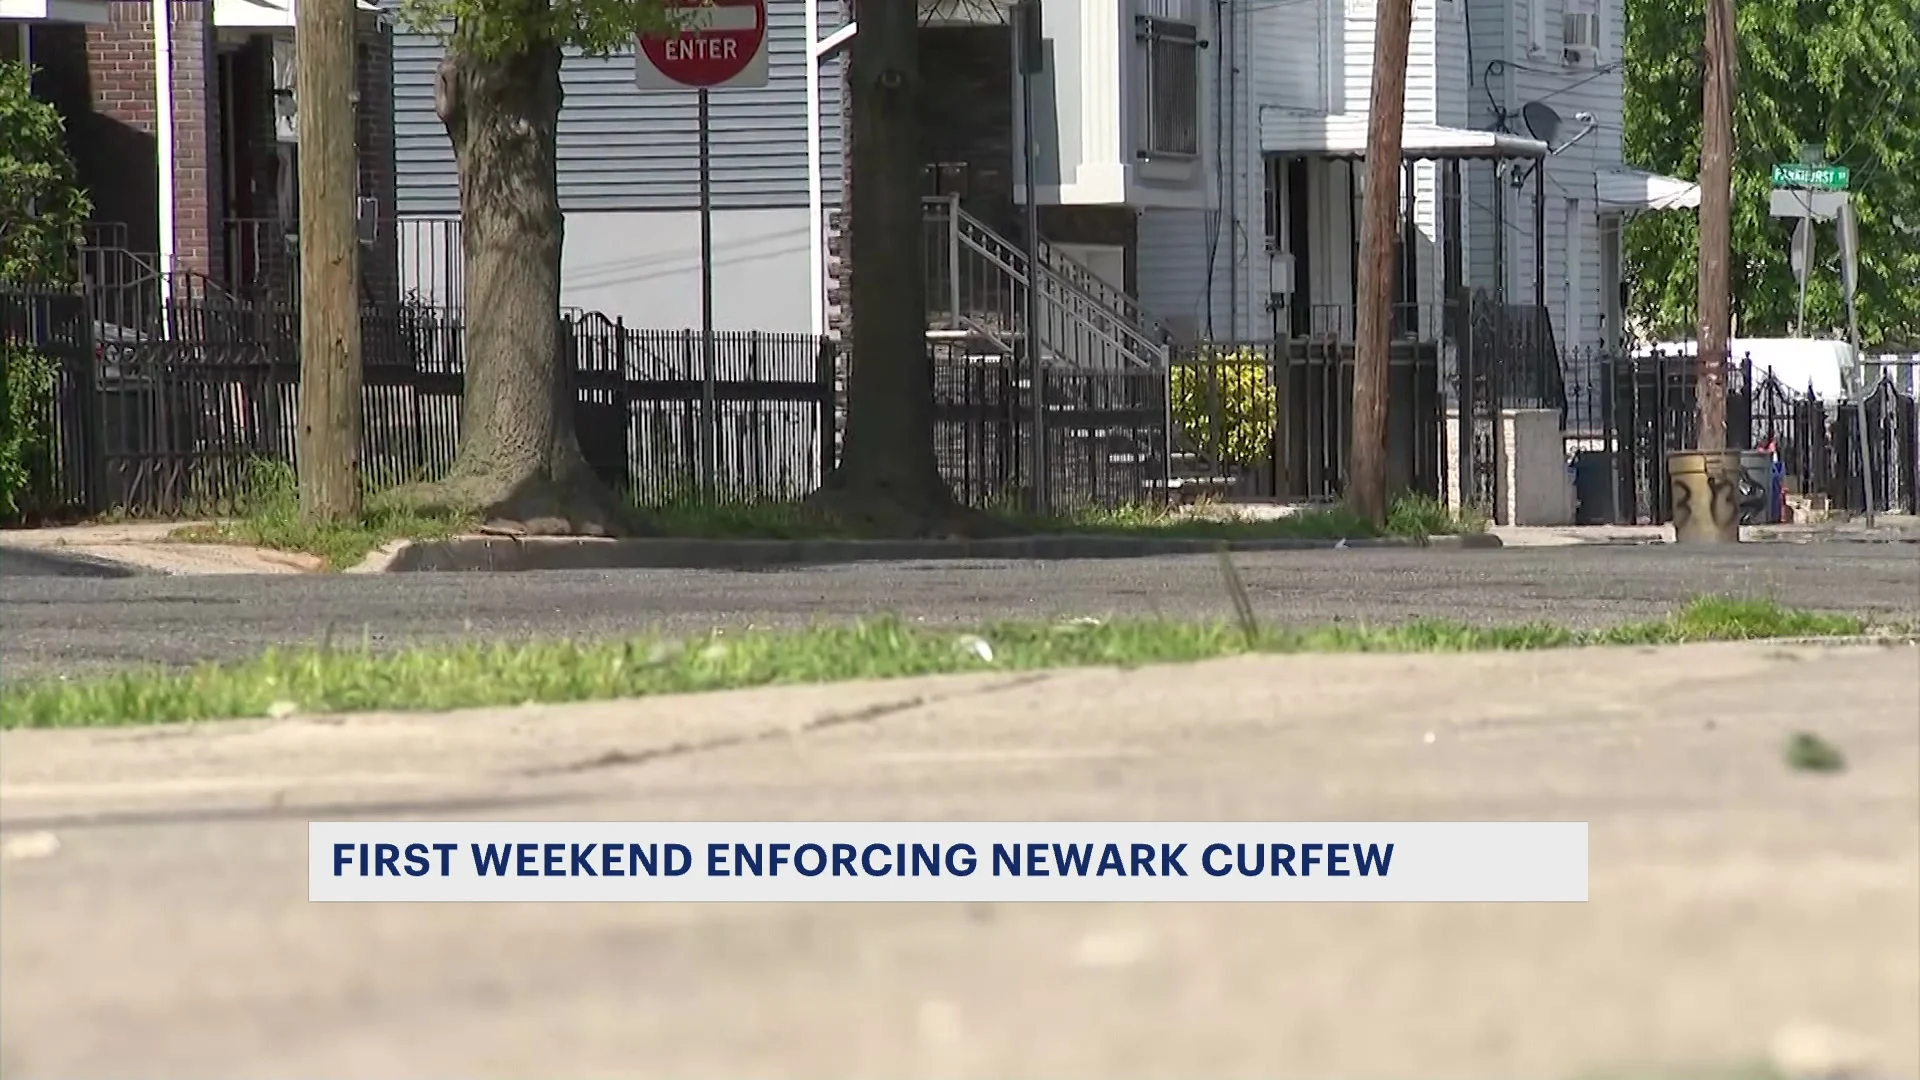 Curfew enforcement for kids under 17 now in effect in Newark